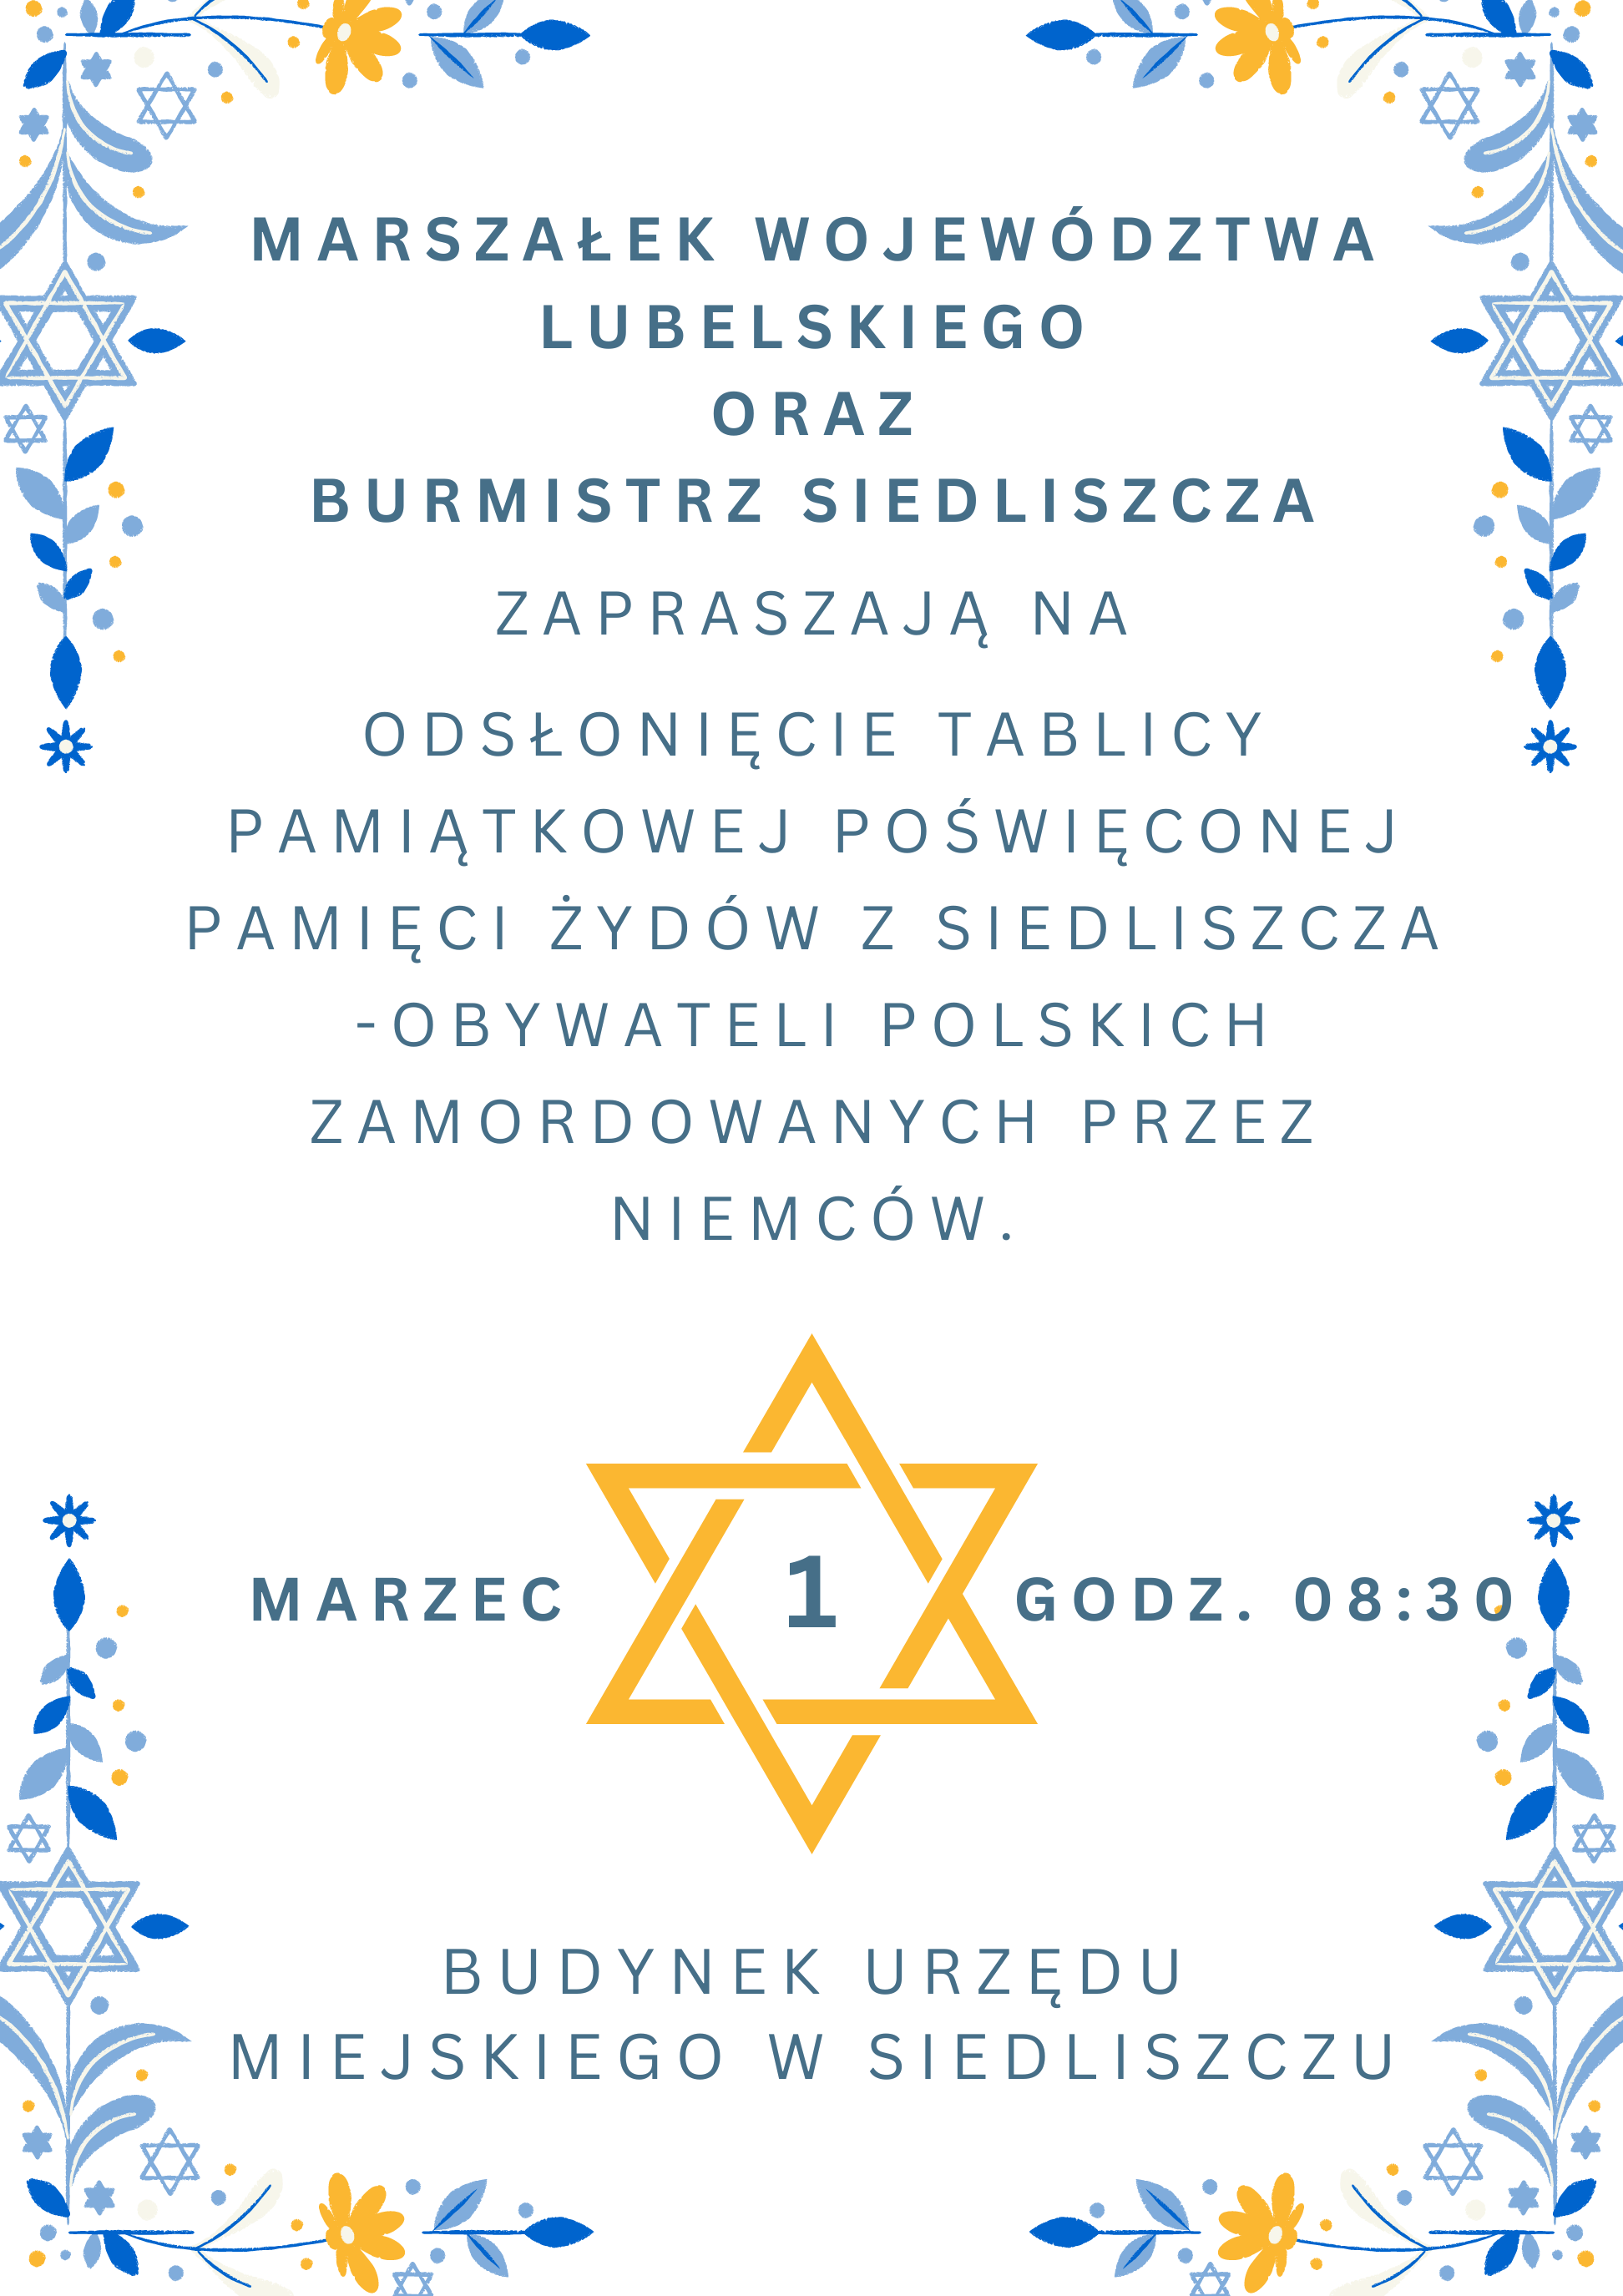 /Zaproszenie na odsłonięcie tablicy pamiątkowej poświęconej pamięci Żydów z Siedliszcza